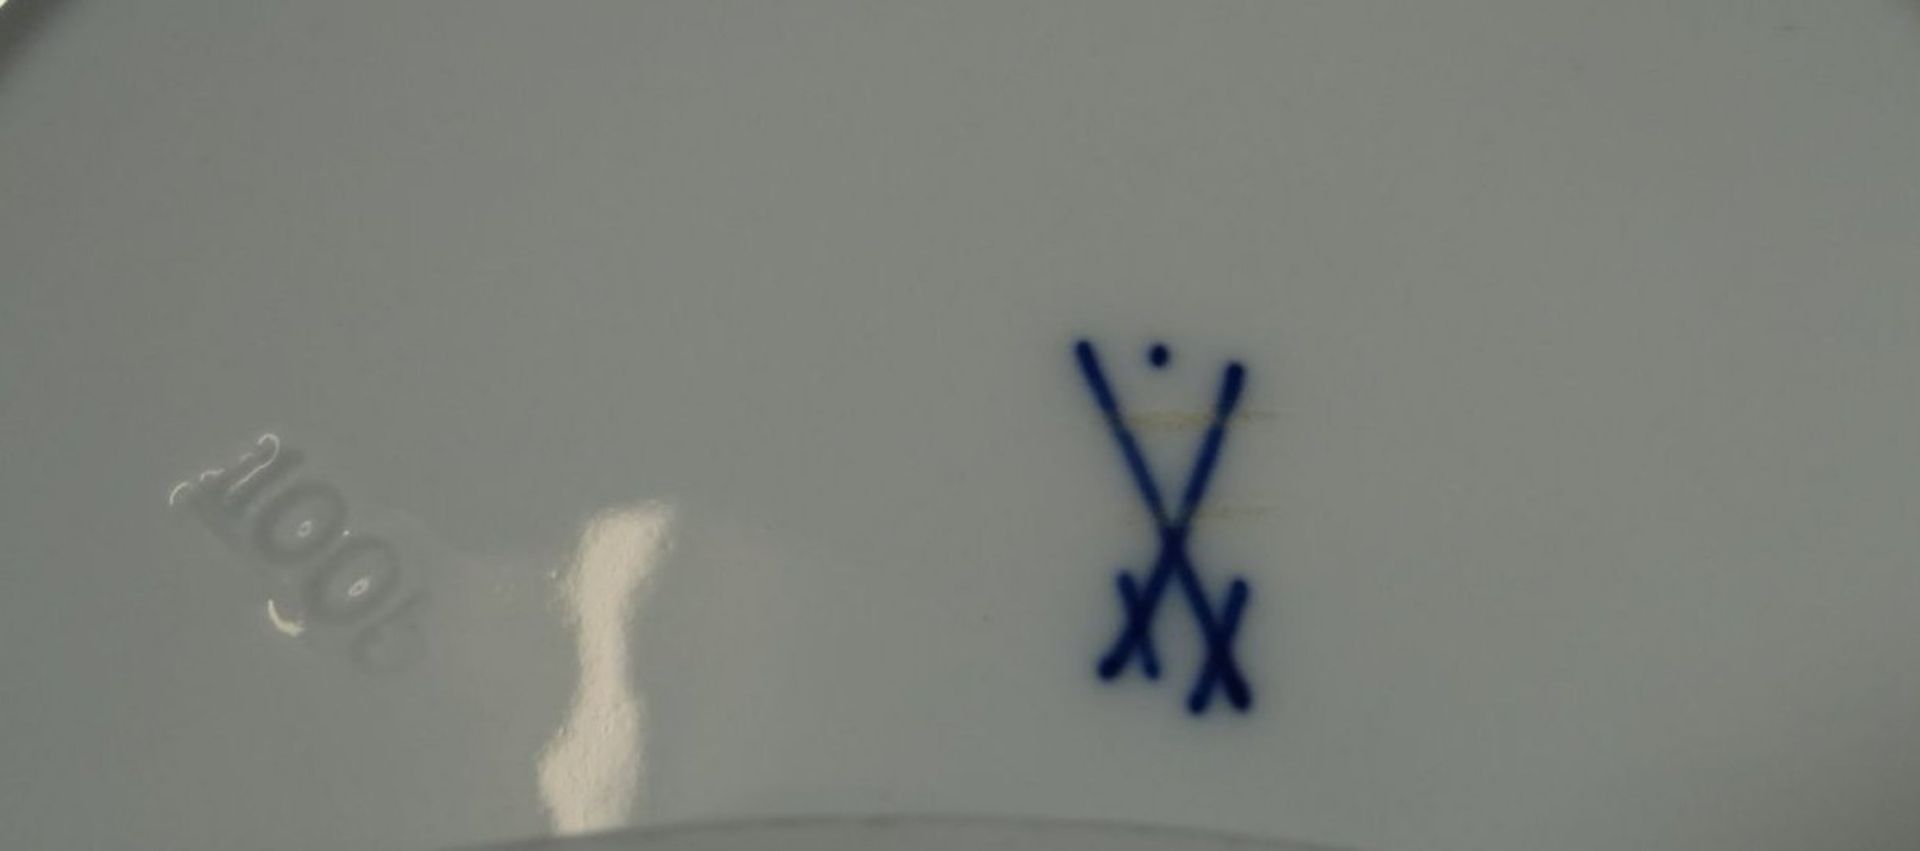 2 Kuchenteller "Meissen" weiss, Schwerter durchschliffen, mit Punkt, D-18 cm - Image 6 of 6